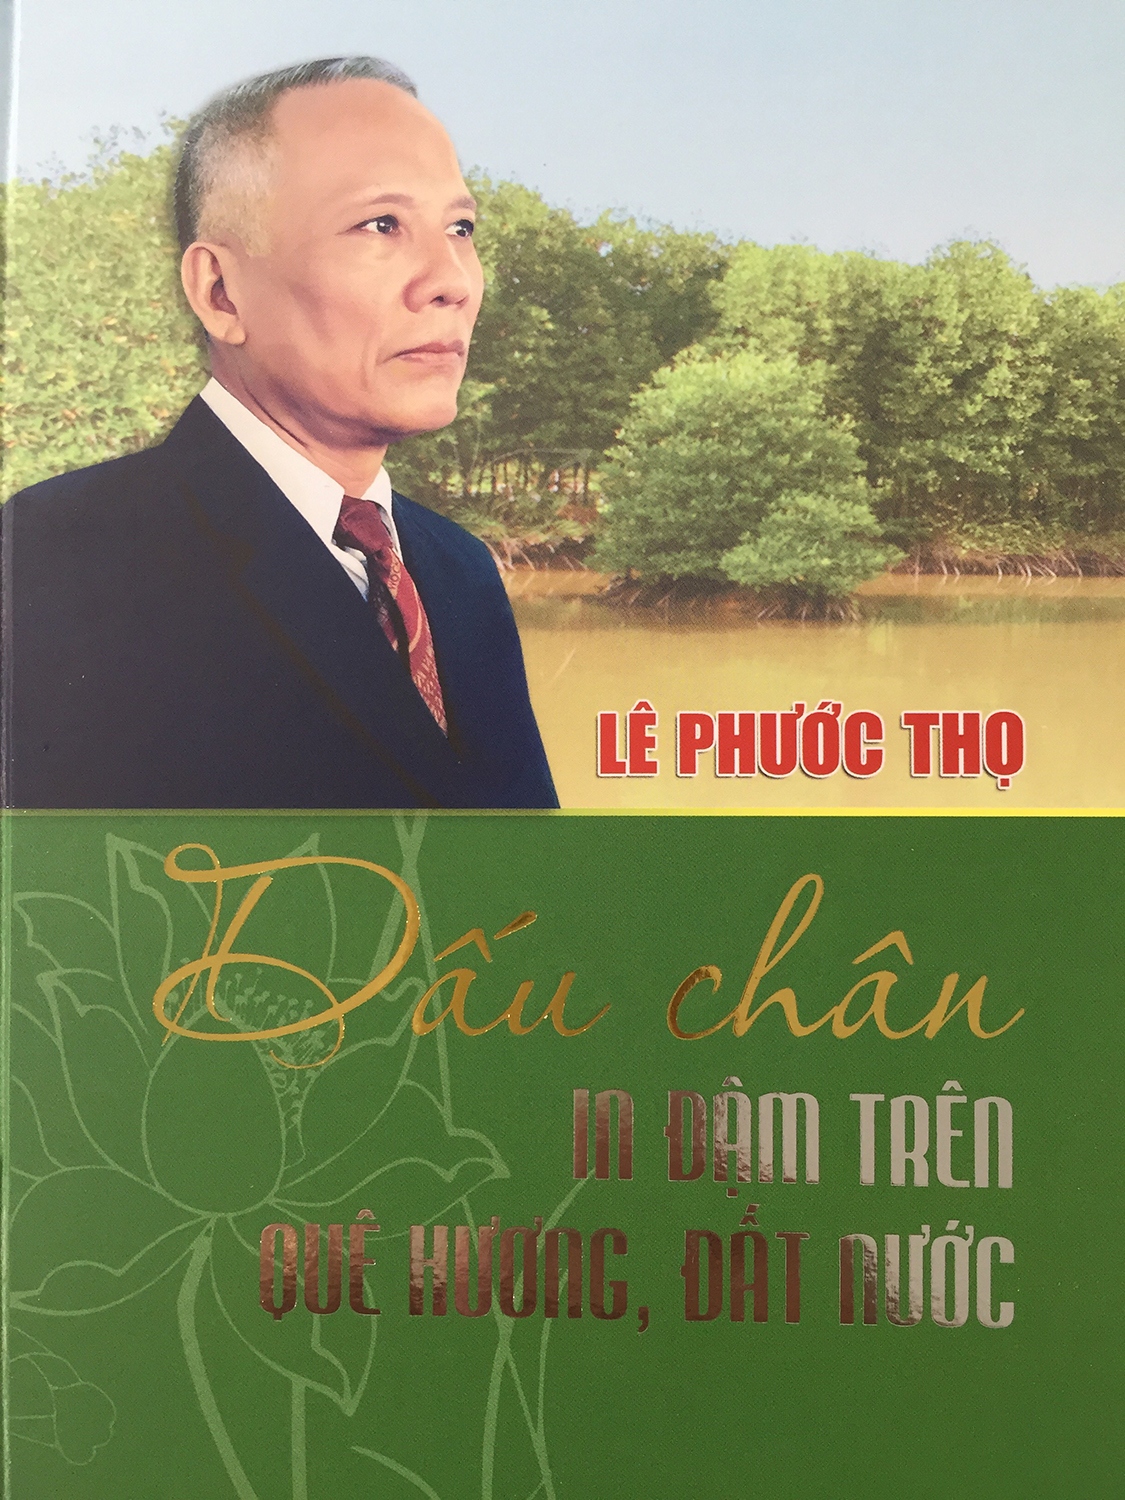 gioi thieu sach cua dong chi le phuoc tho - dau chan in dam tren quen huong, dat nuoc hinh anh 1